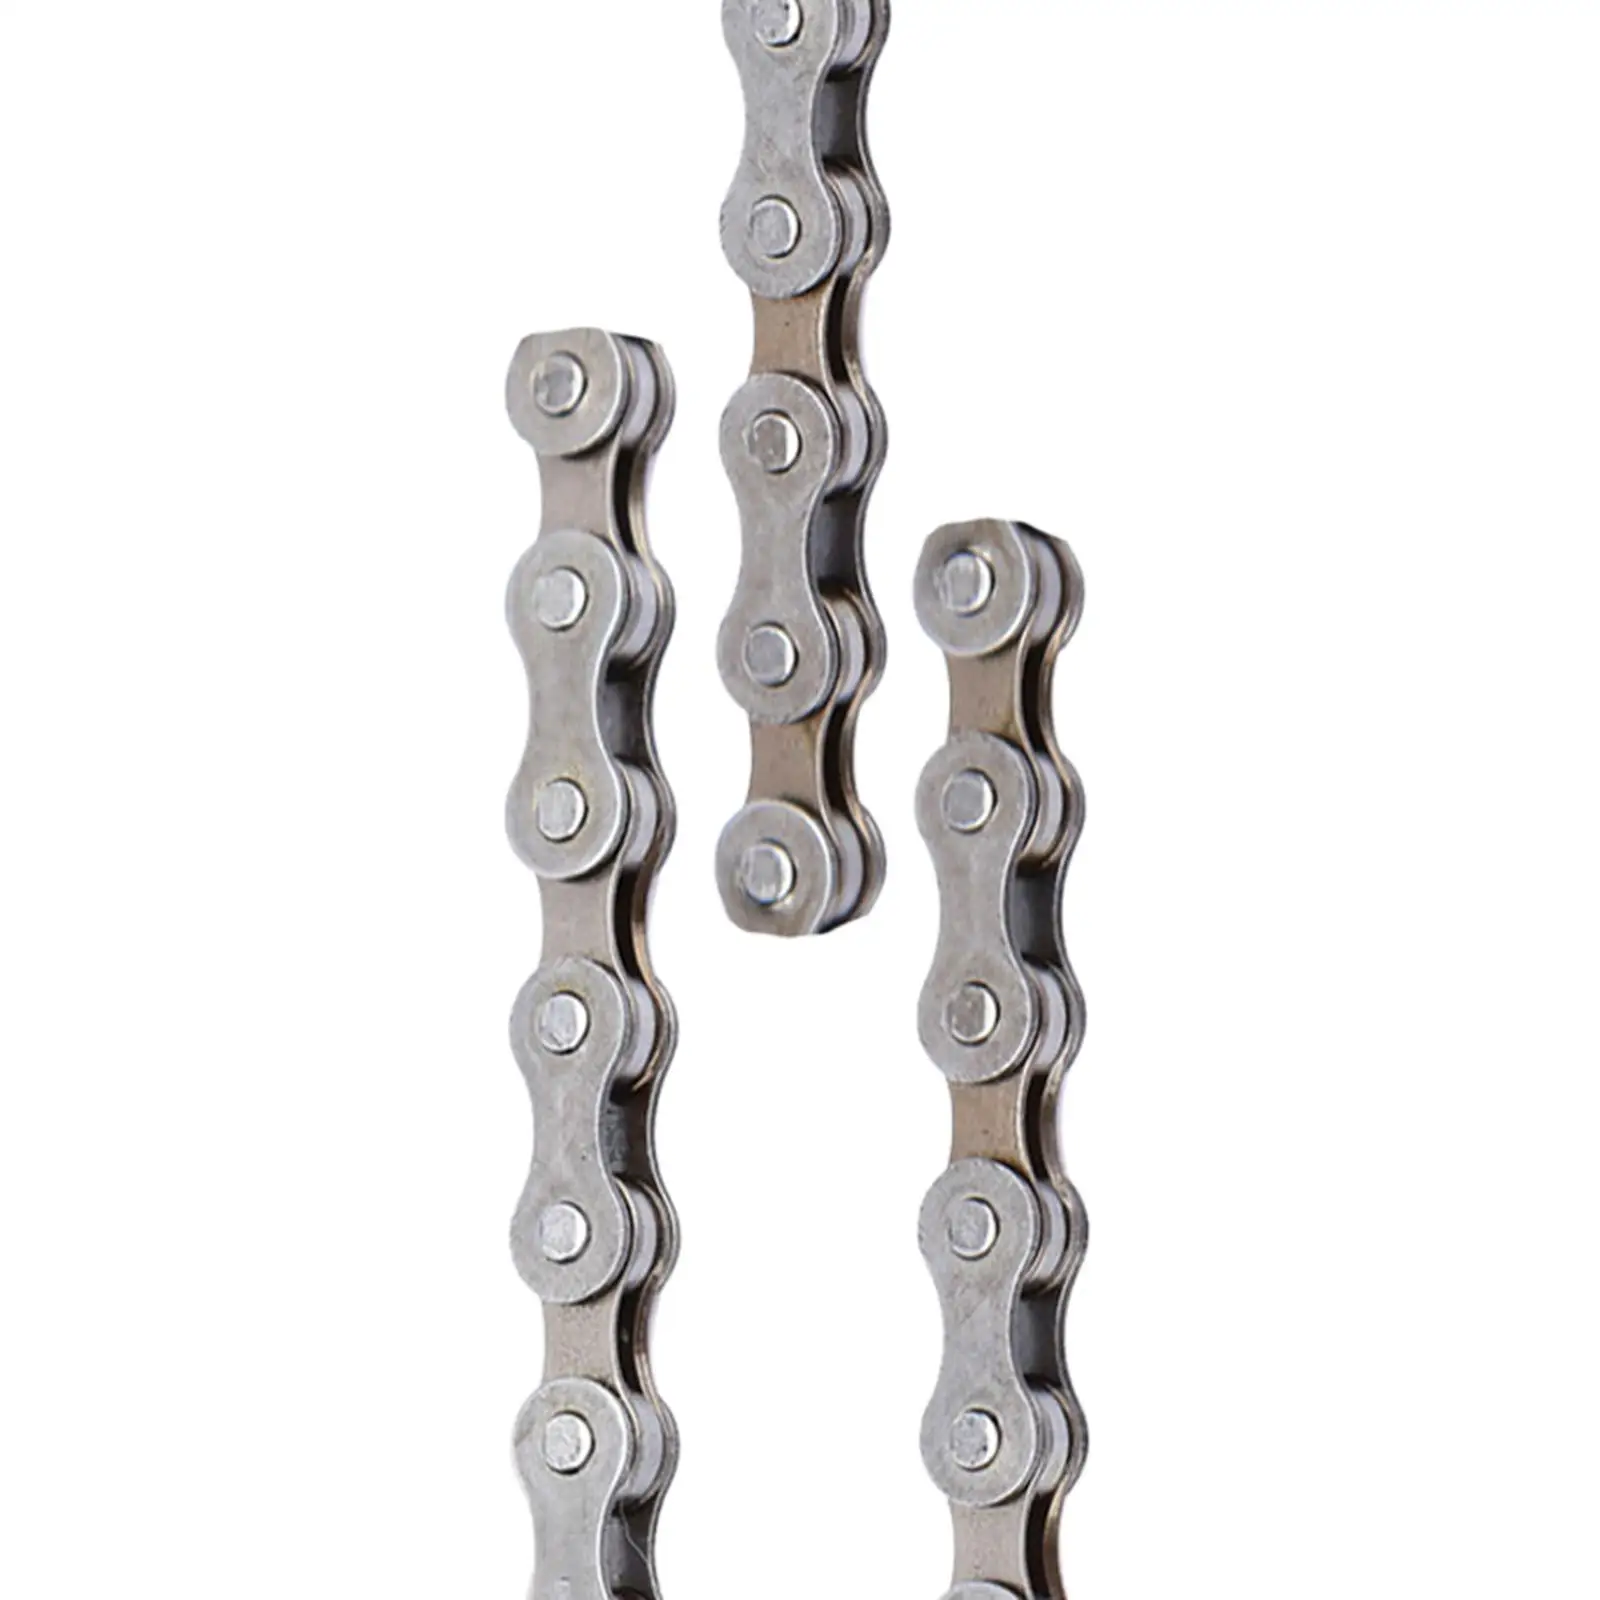 

Сверхлегкая велосипедная цепь, универсальная запасная часть для ремонта велосипеда, металлическая цепь для горных велосипедов